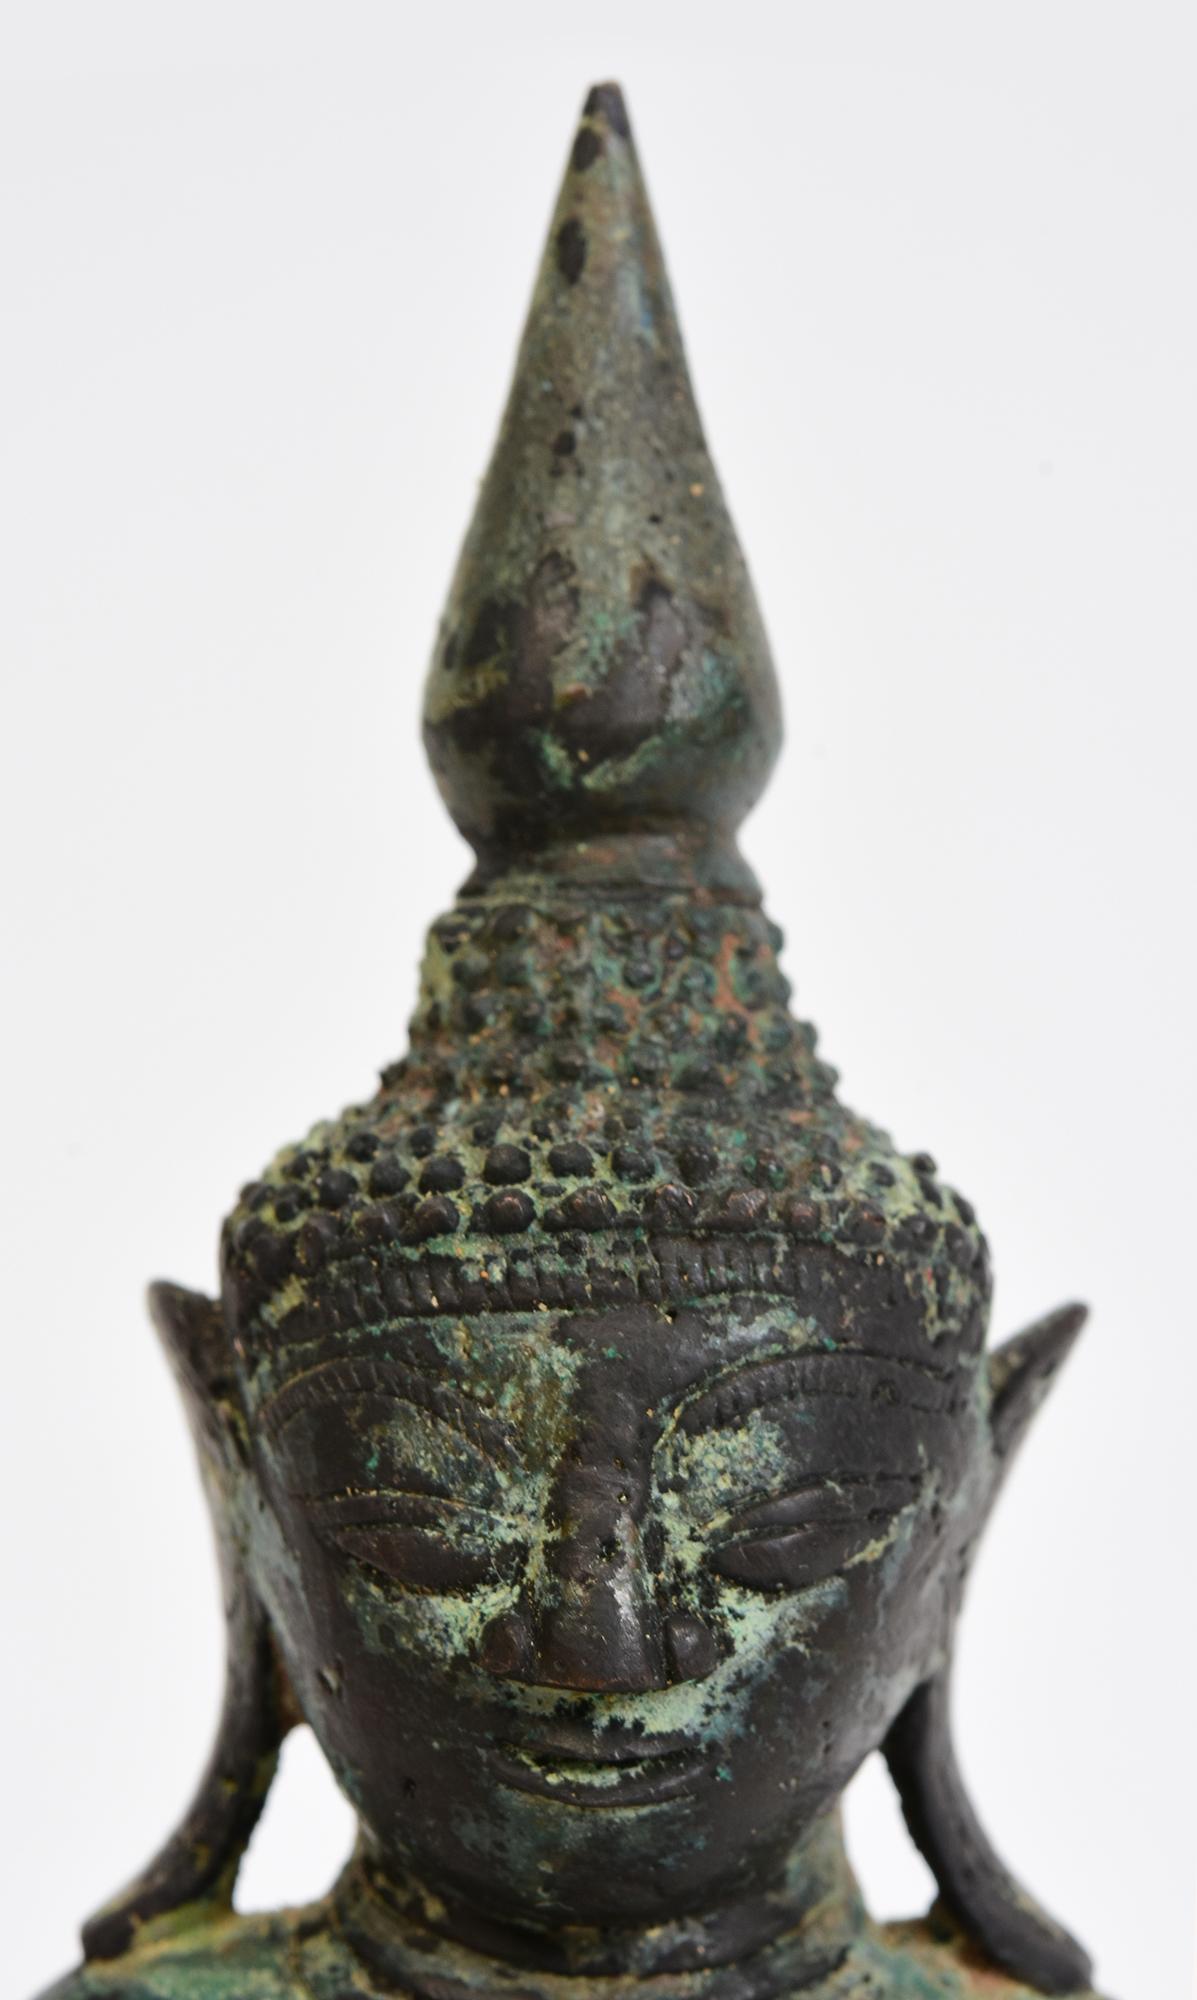 Antiker burmesischer Bronze-Buddha in Mara-Vijaya-Haltung (die Erde zum Zeugen rufen) auf einem Sockel.

Alter: Birma, Shan-Zeit, 17. Jahrhundert
Größe: Höhe 20,3 C.M. / Breite 9,2 C.M. / Tiefe 5,5 C.M.
Zustand: Insgesamt guter Zustand (einige